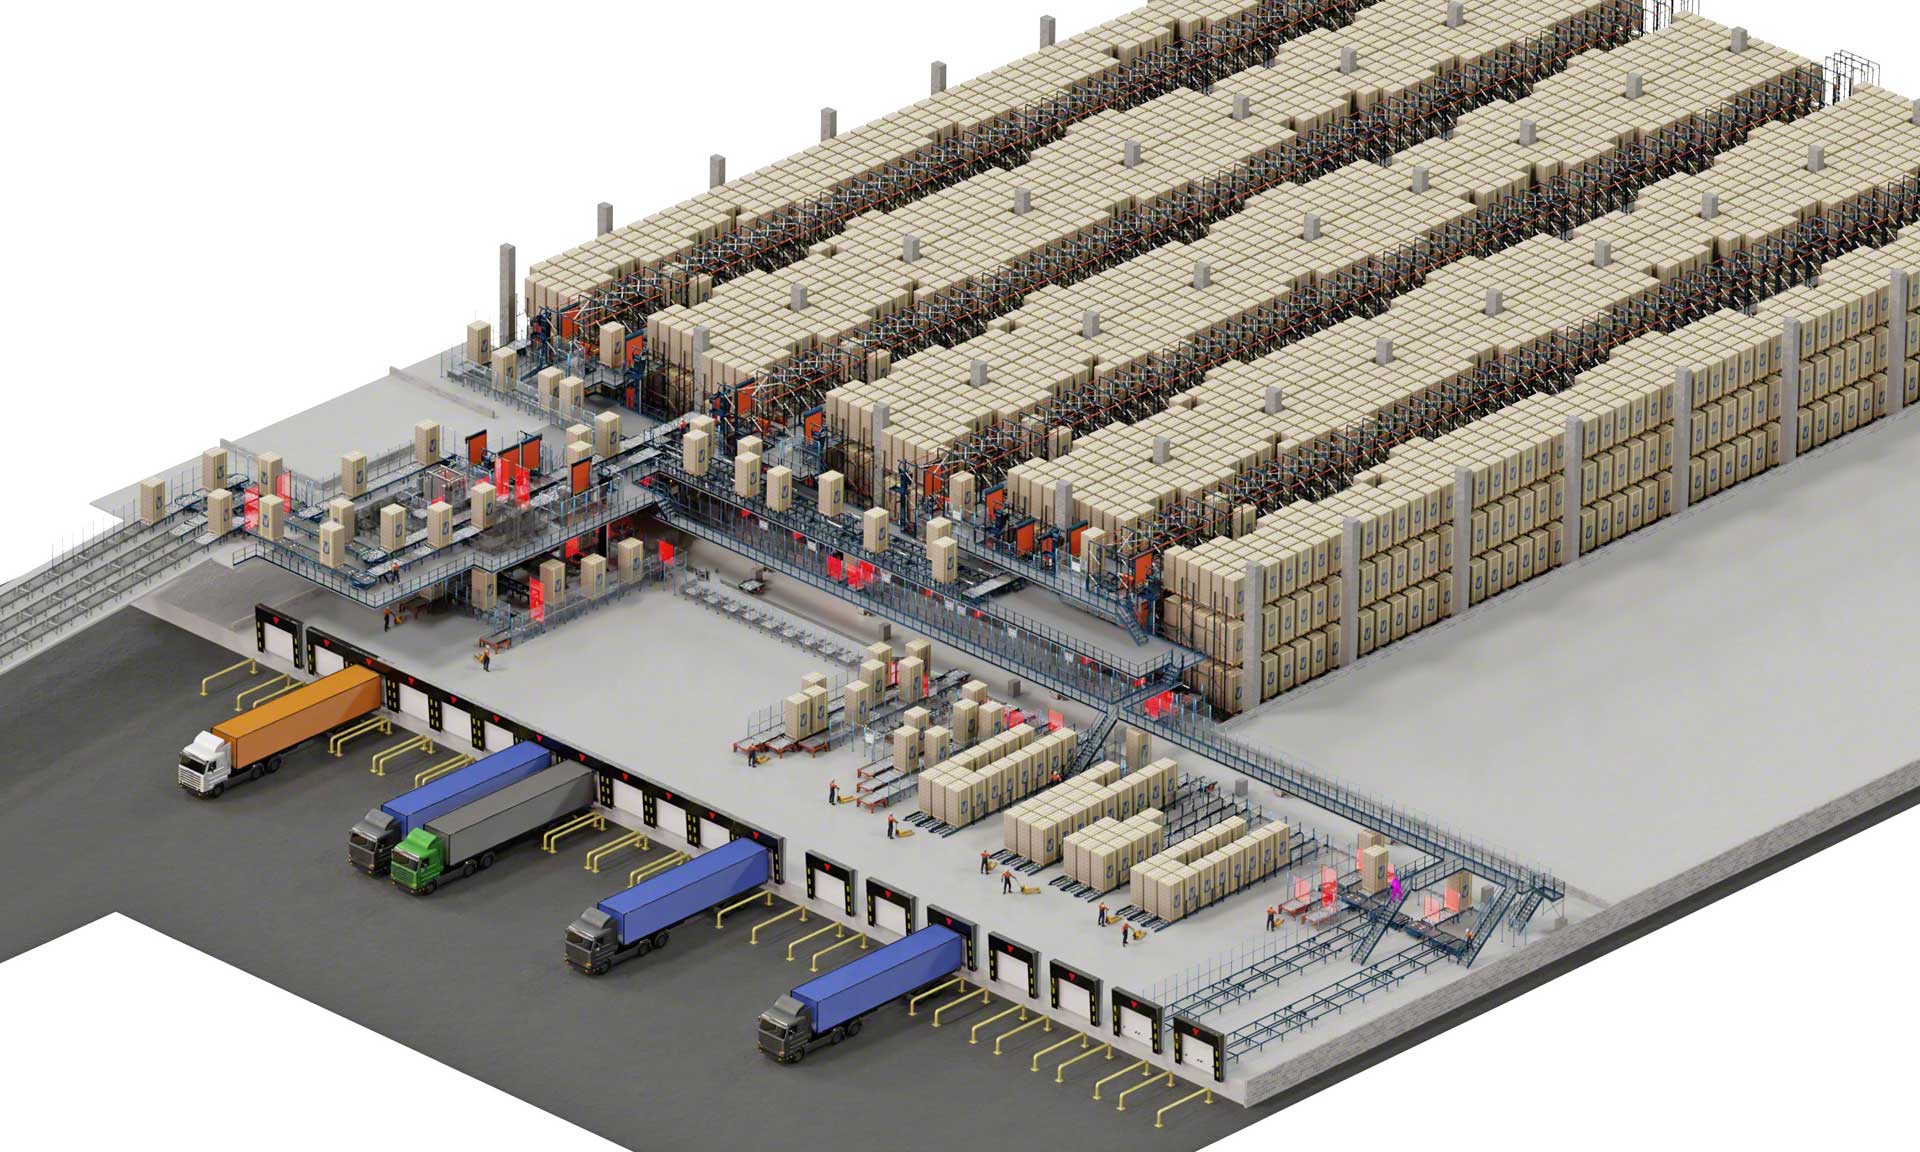 PepsiCo moderniza o armazém de sua fábrica de batatas fritas na Bélgica